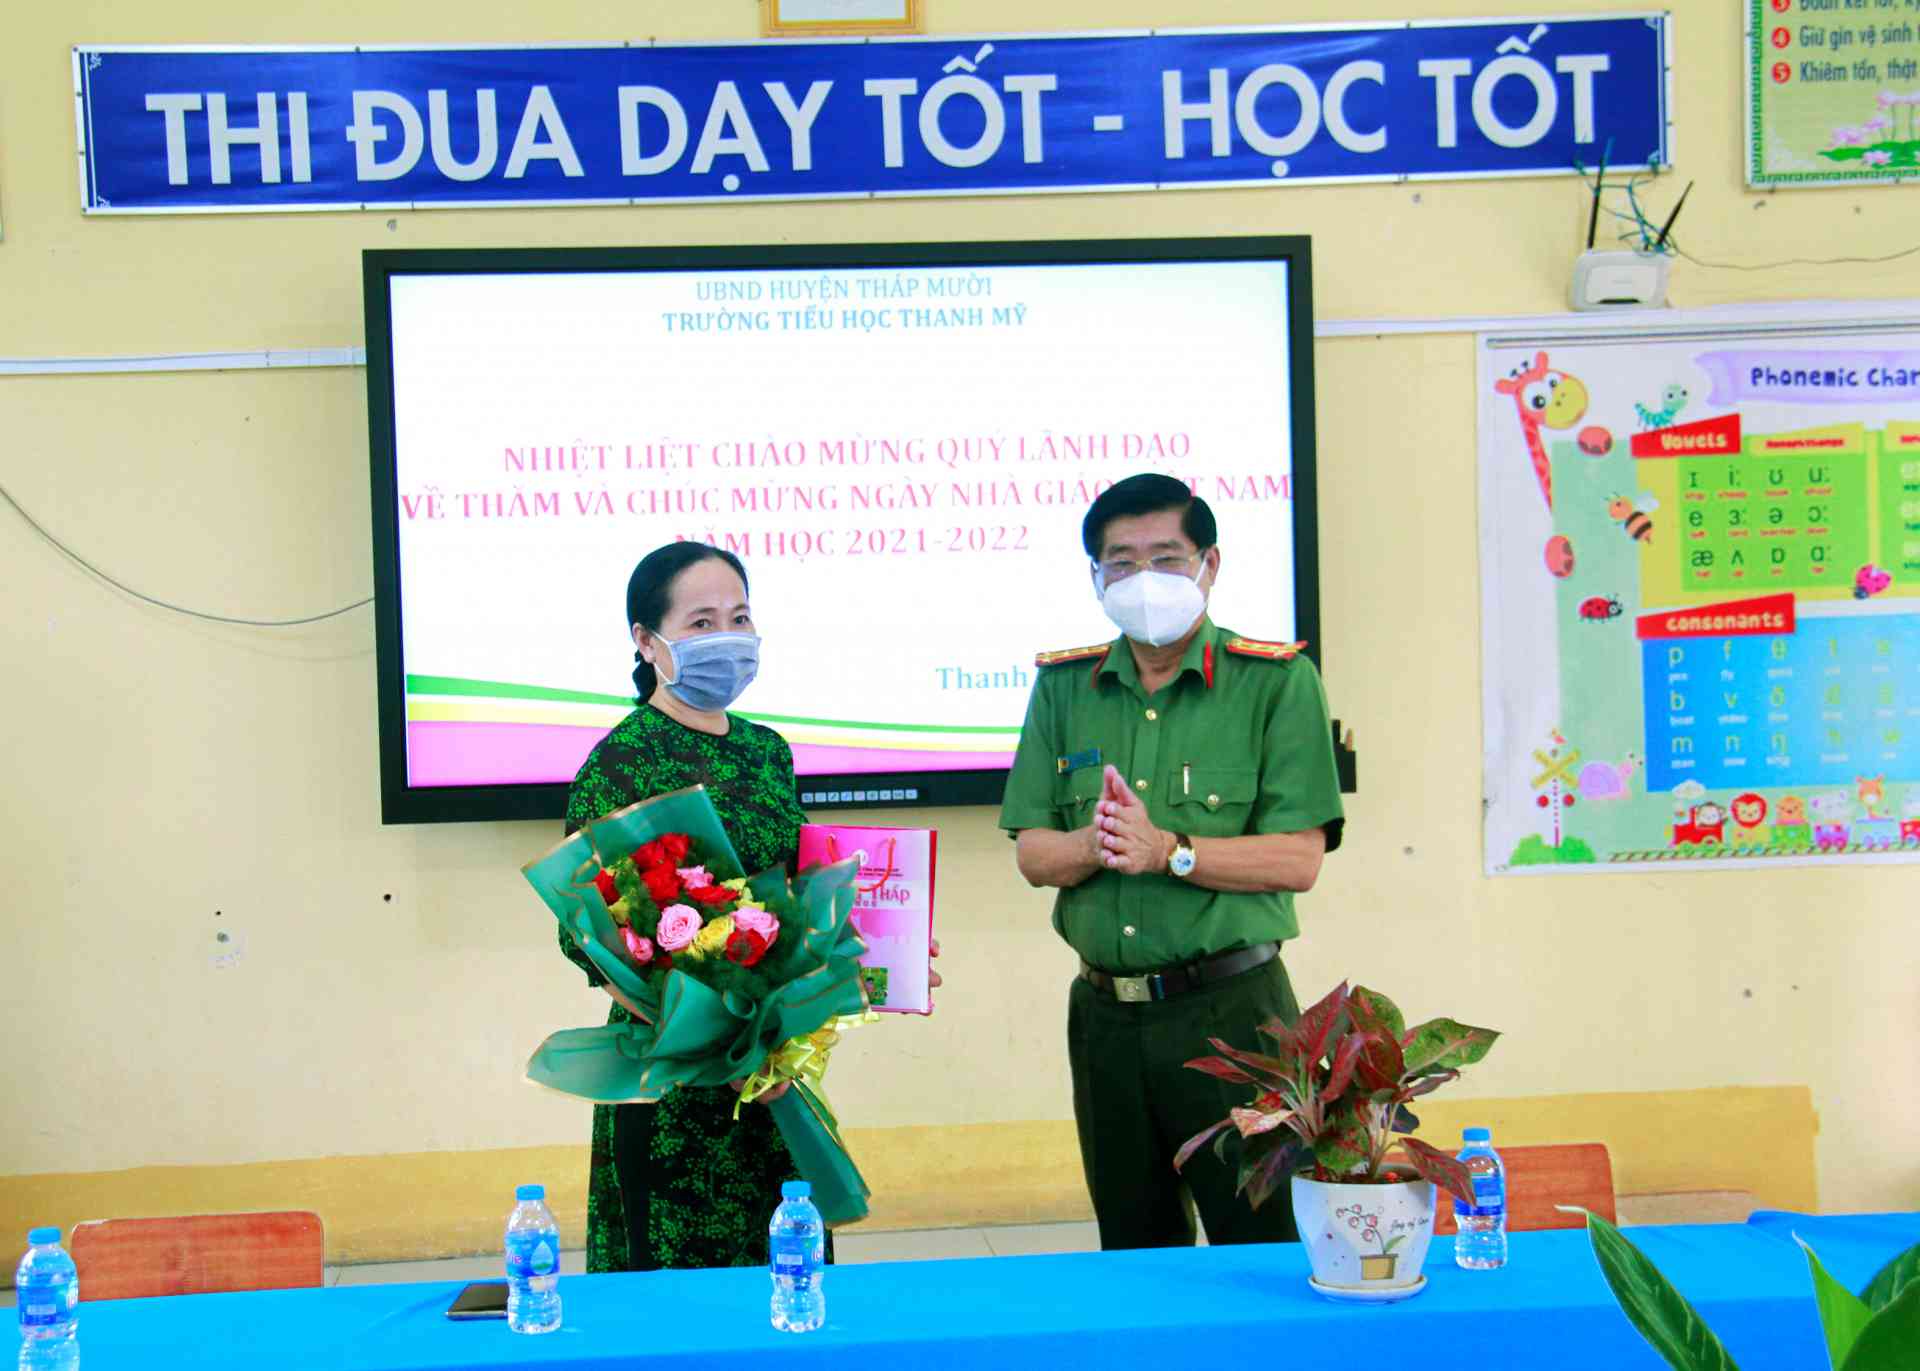 Đồng chí Nguyễn Văn Hiểu thay mặt Ban Thường vụ Tỉnh tặng hoa và quà lưu niệm cho nhà trường